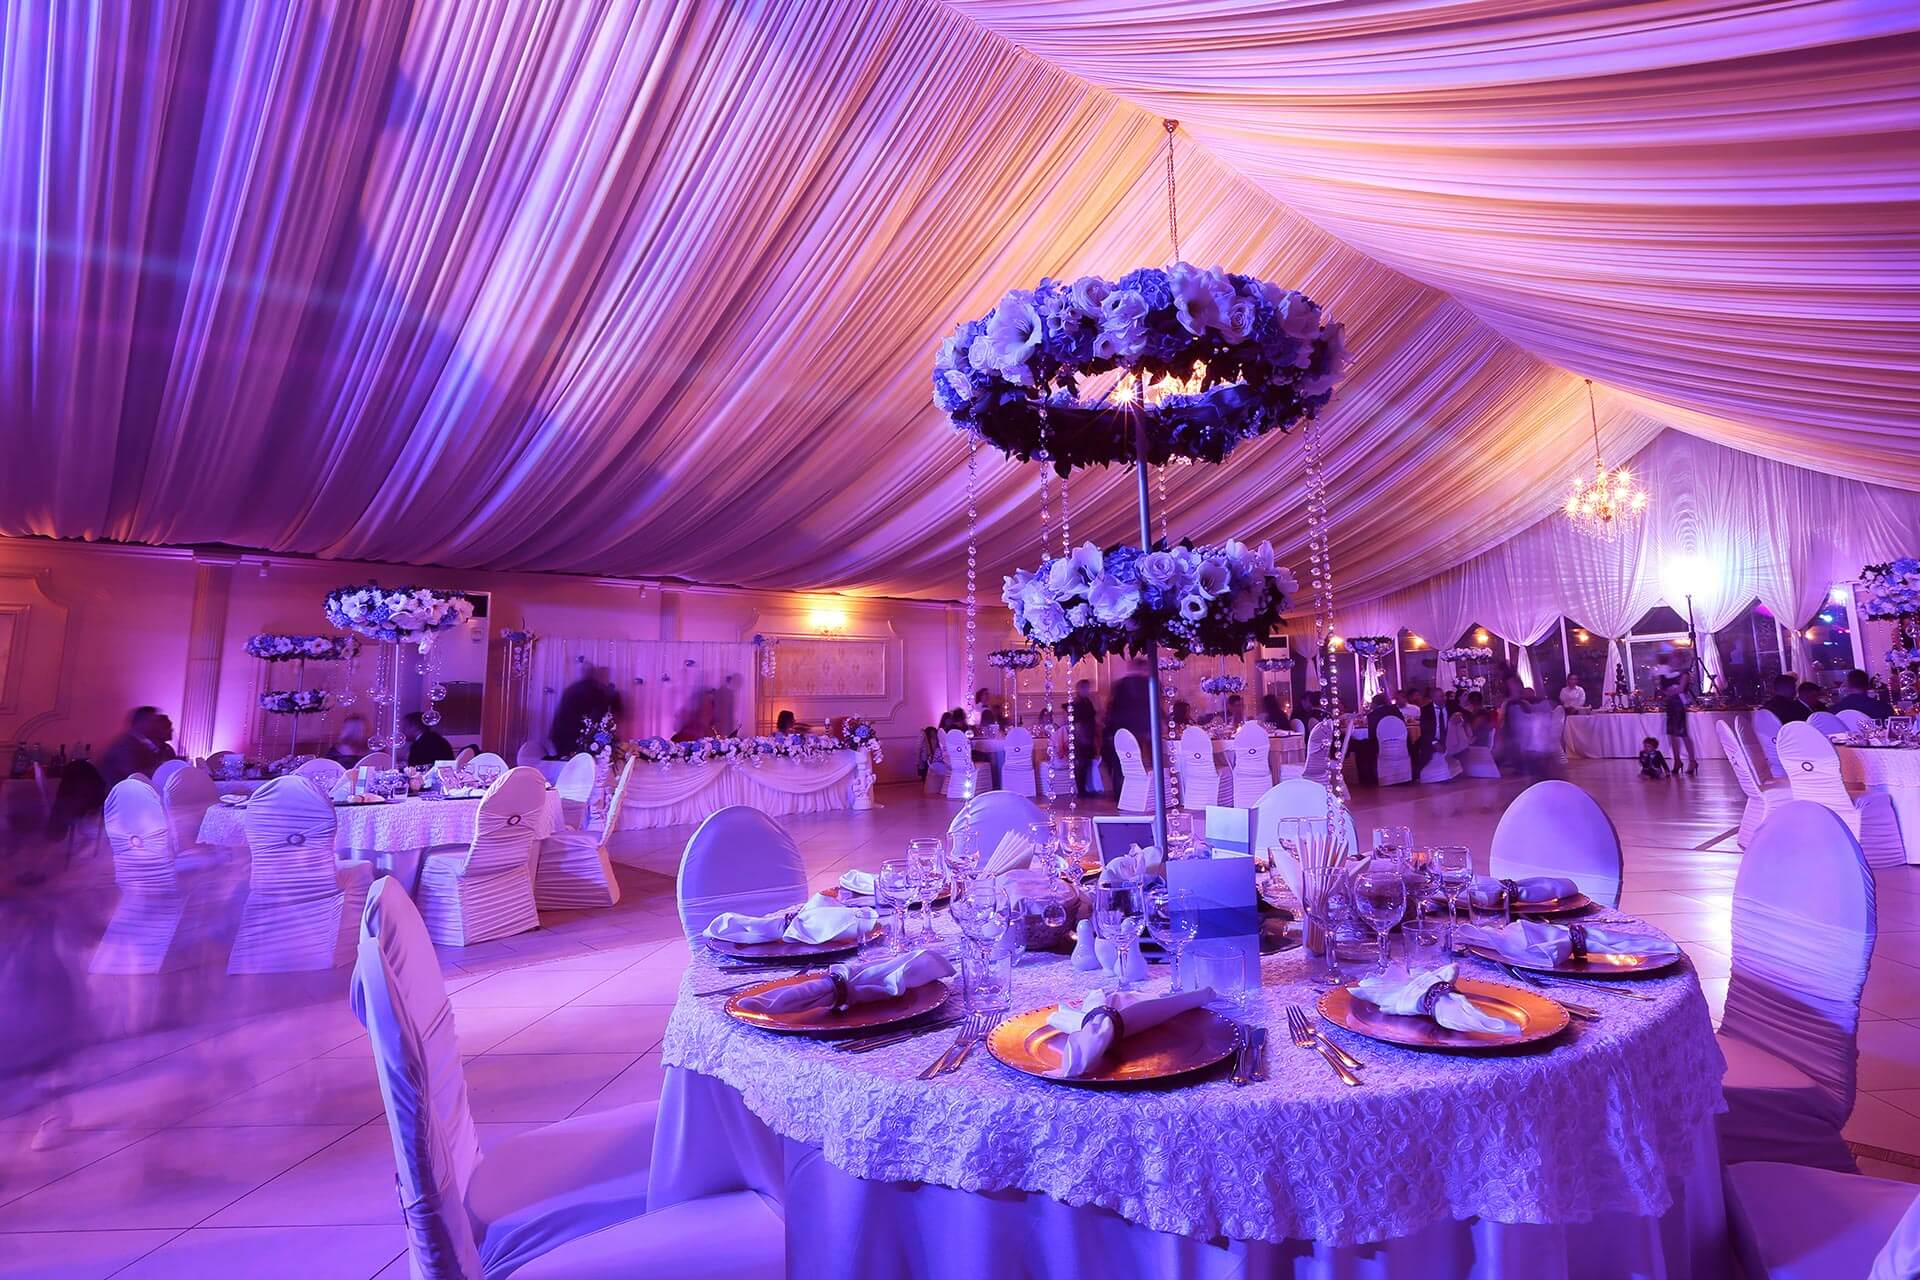 A beautiful wedding reception hall